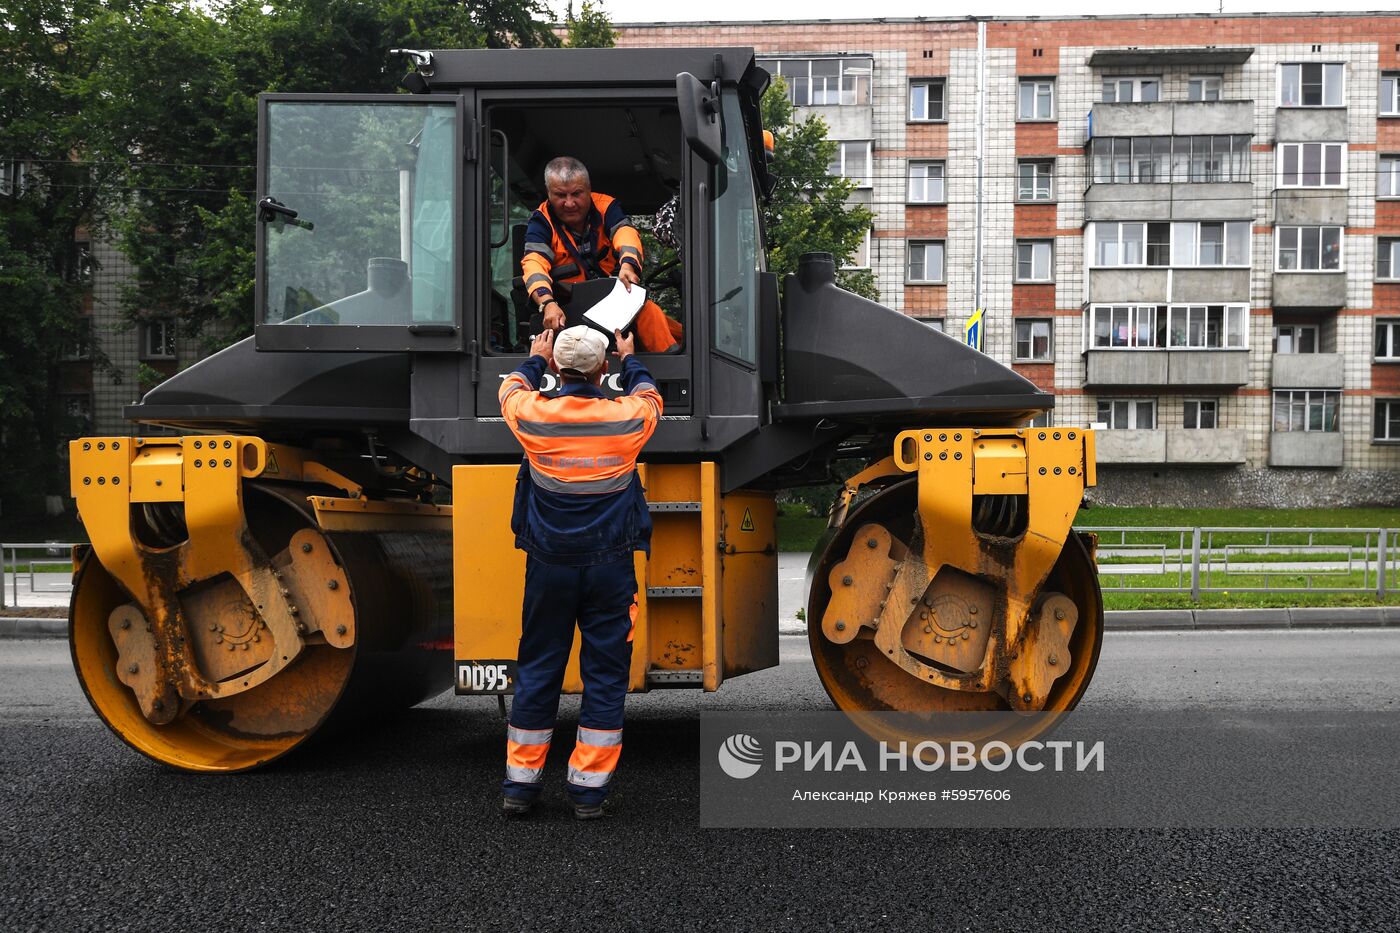 Работы по укладке асфальта на дорогах в Новосибирской области